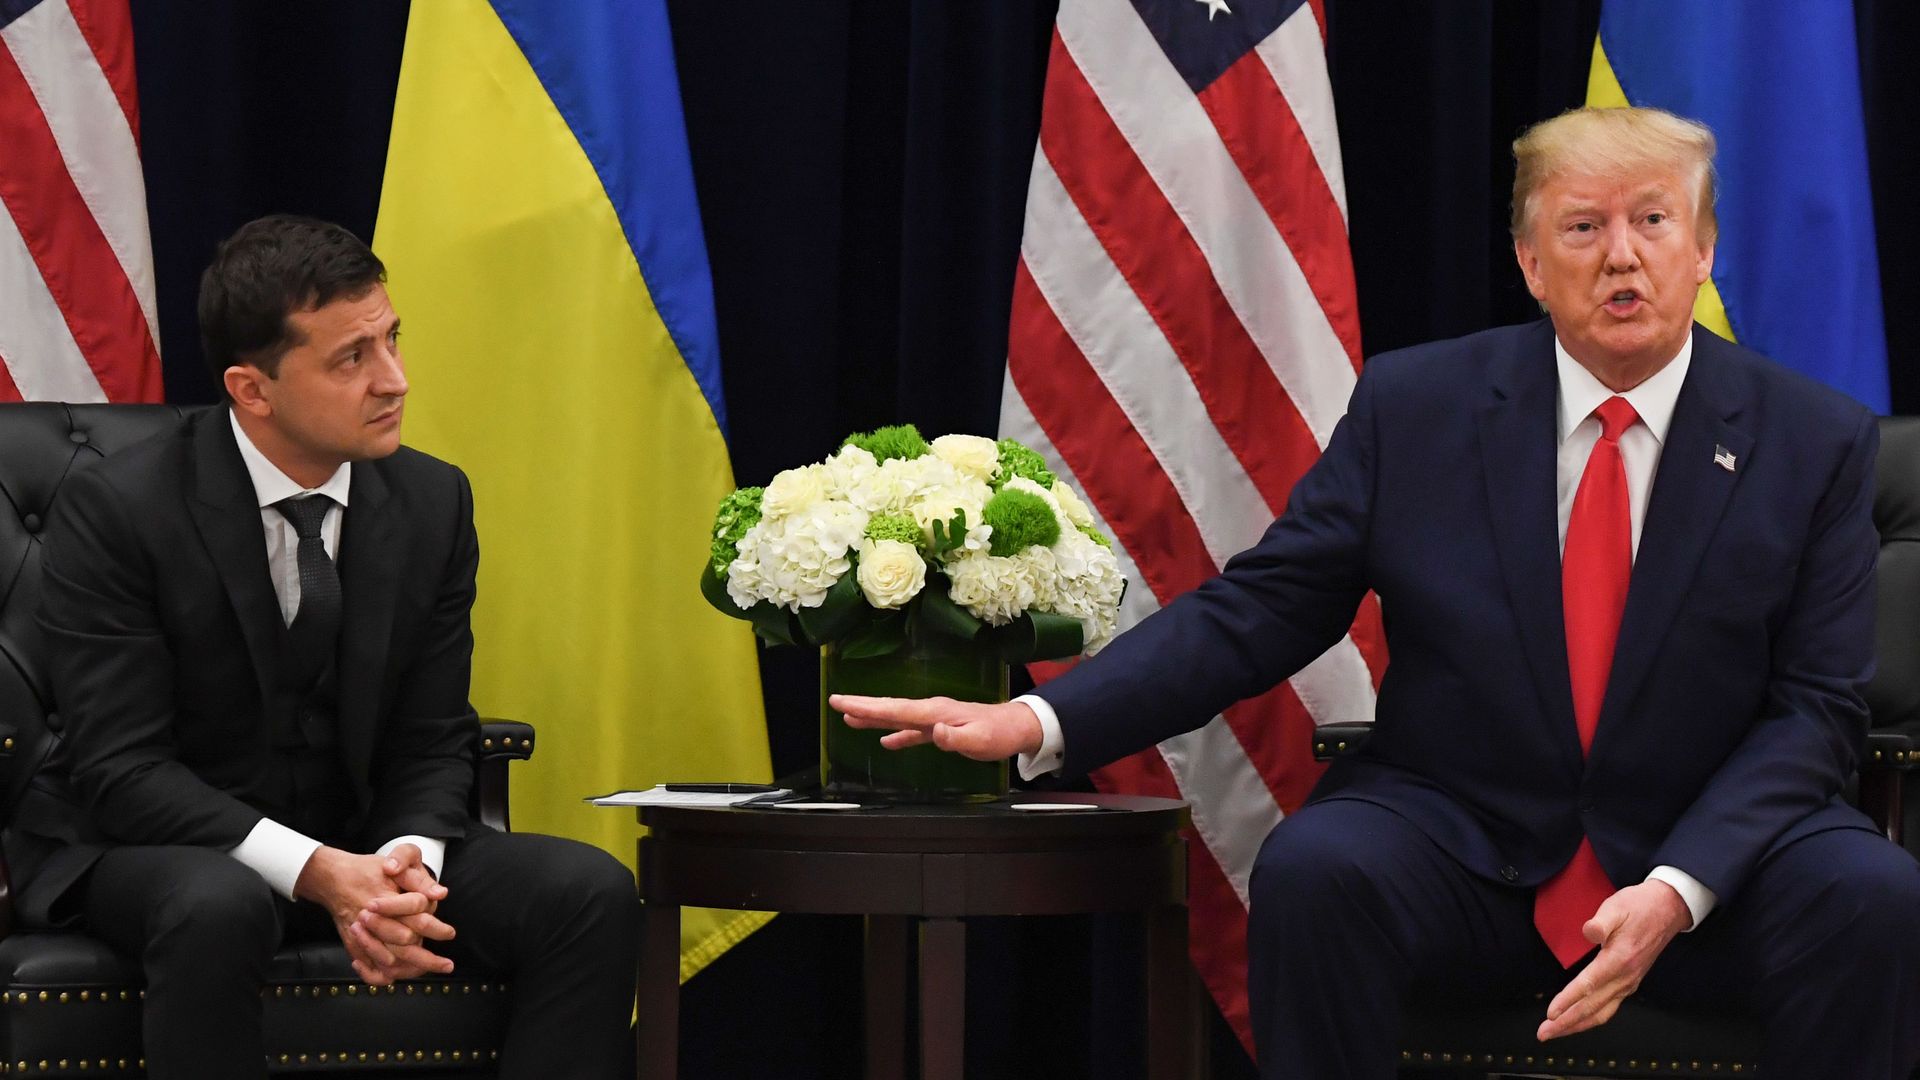 President Donald Trump and Ukrainian President Volodymyr Zelensky speak during a meeting in New York on September 25, 2019